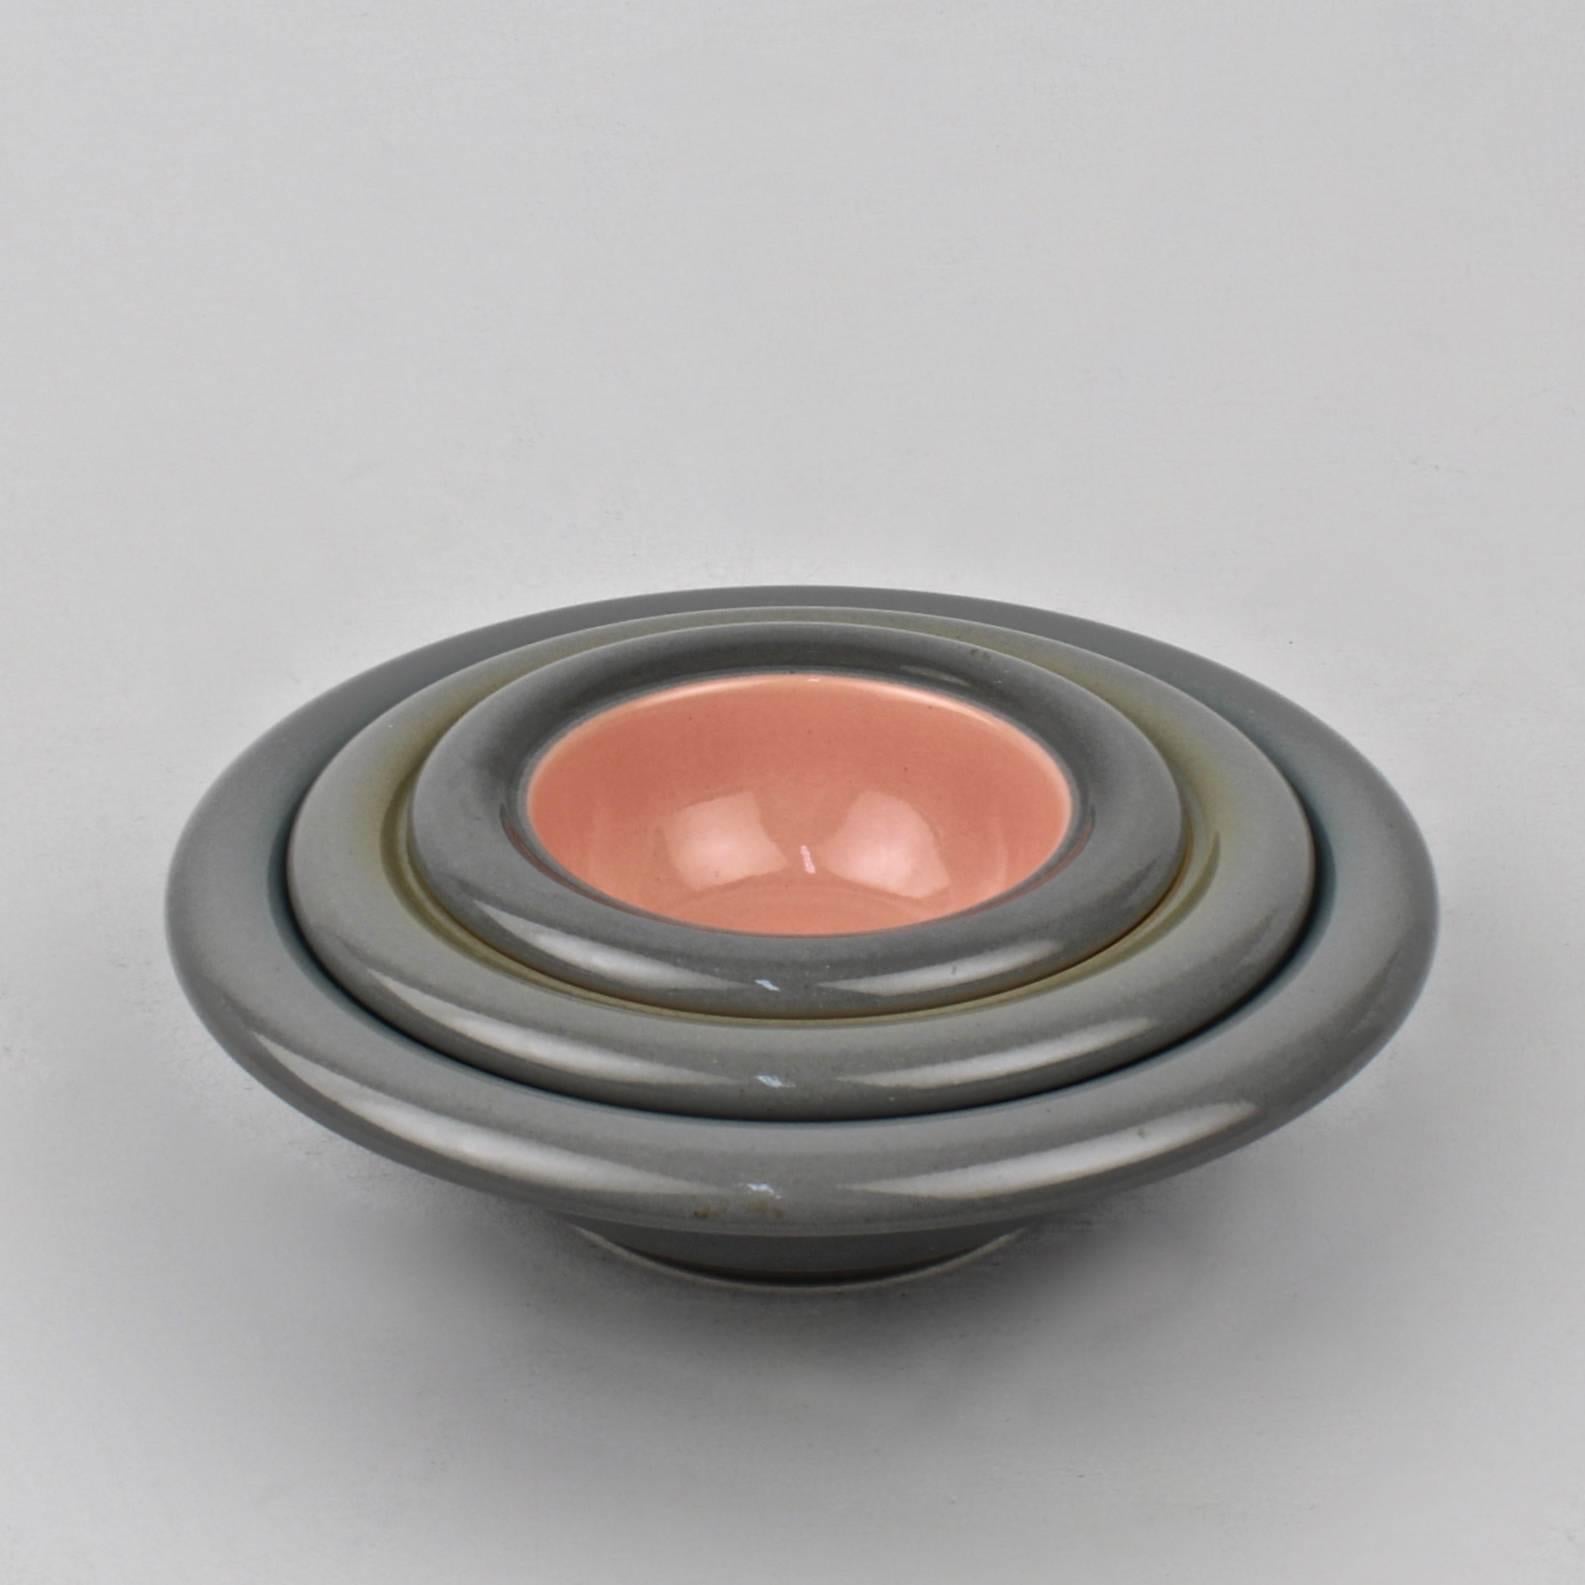 Ensemble de trois bols en poterie empilables. Conçu par Franco Bucci pour le Laboratorio Pesaro. Retaillé par Nieman Marcus. 

Turquoise, jaune et rose sur fond gris.

Diamètres des coupes : environ 9 3/4 po, environ 7 3/4 po, environ 6